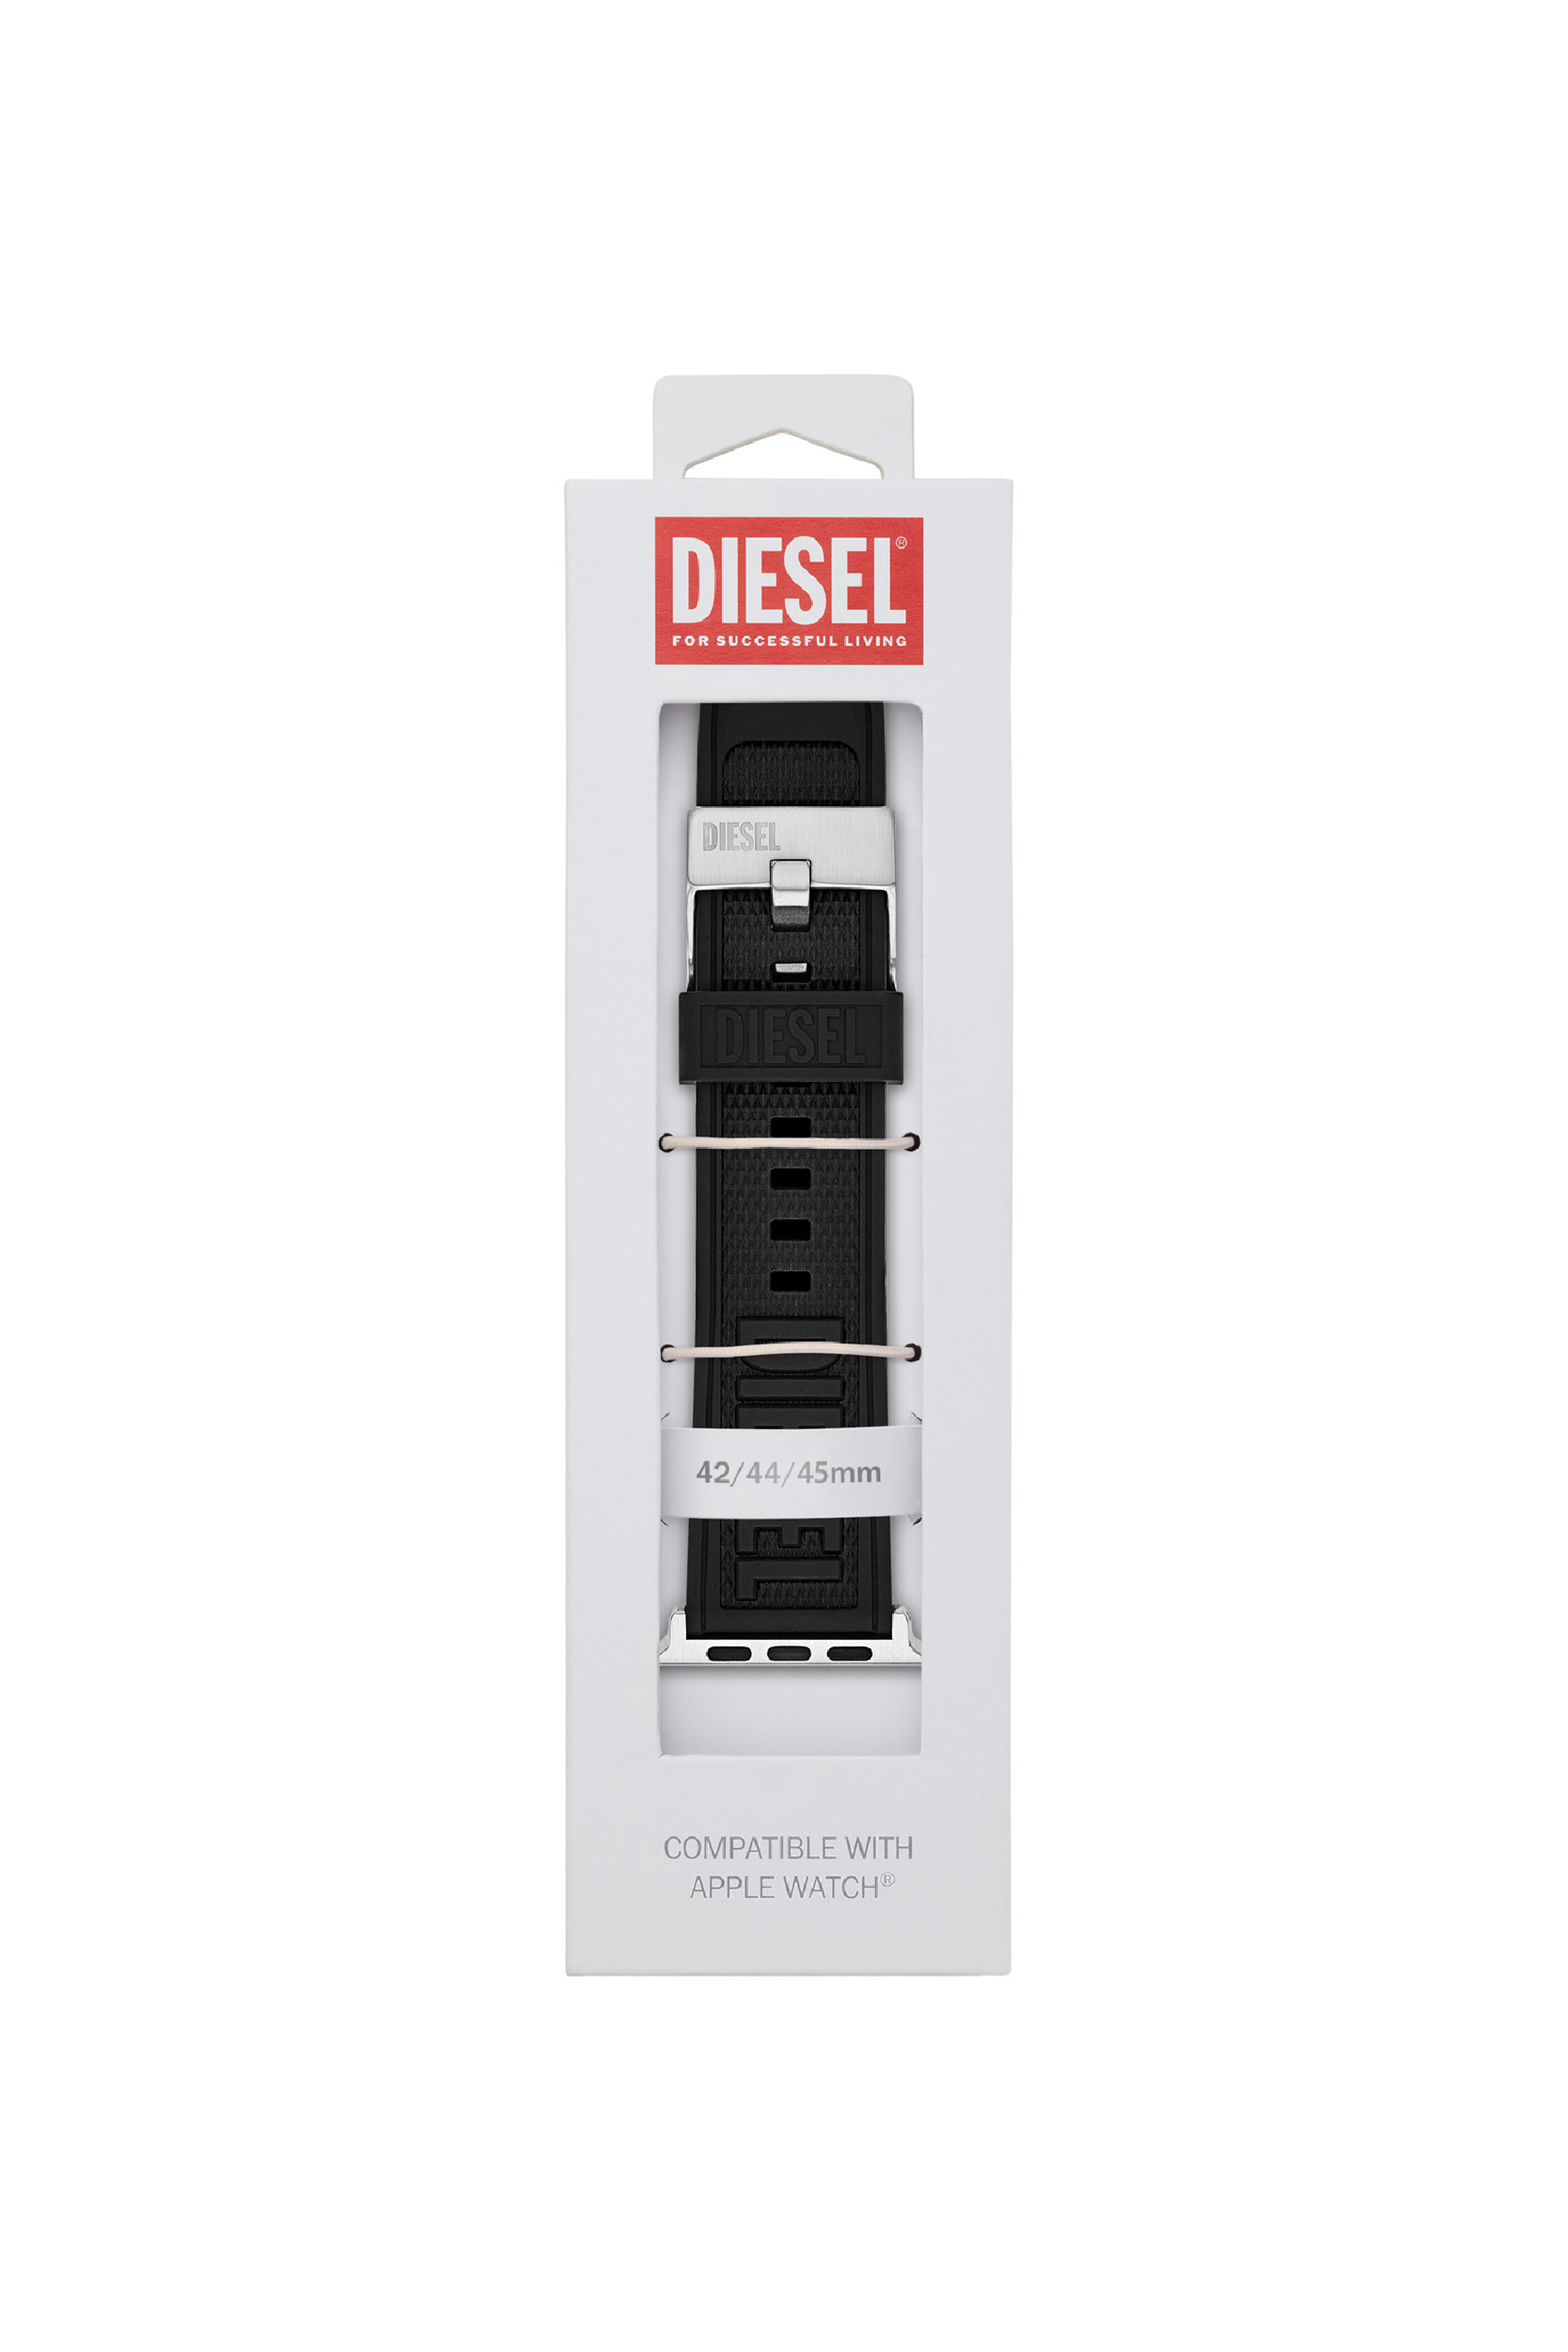 Diesel - DSS0014, Nero - Image 2